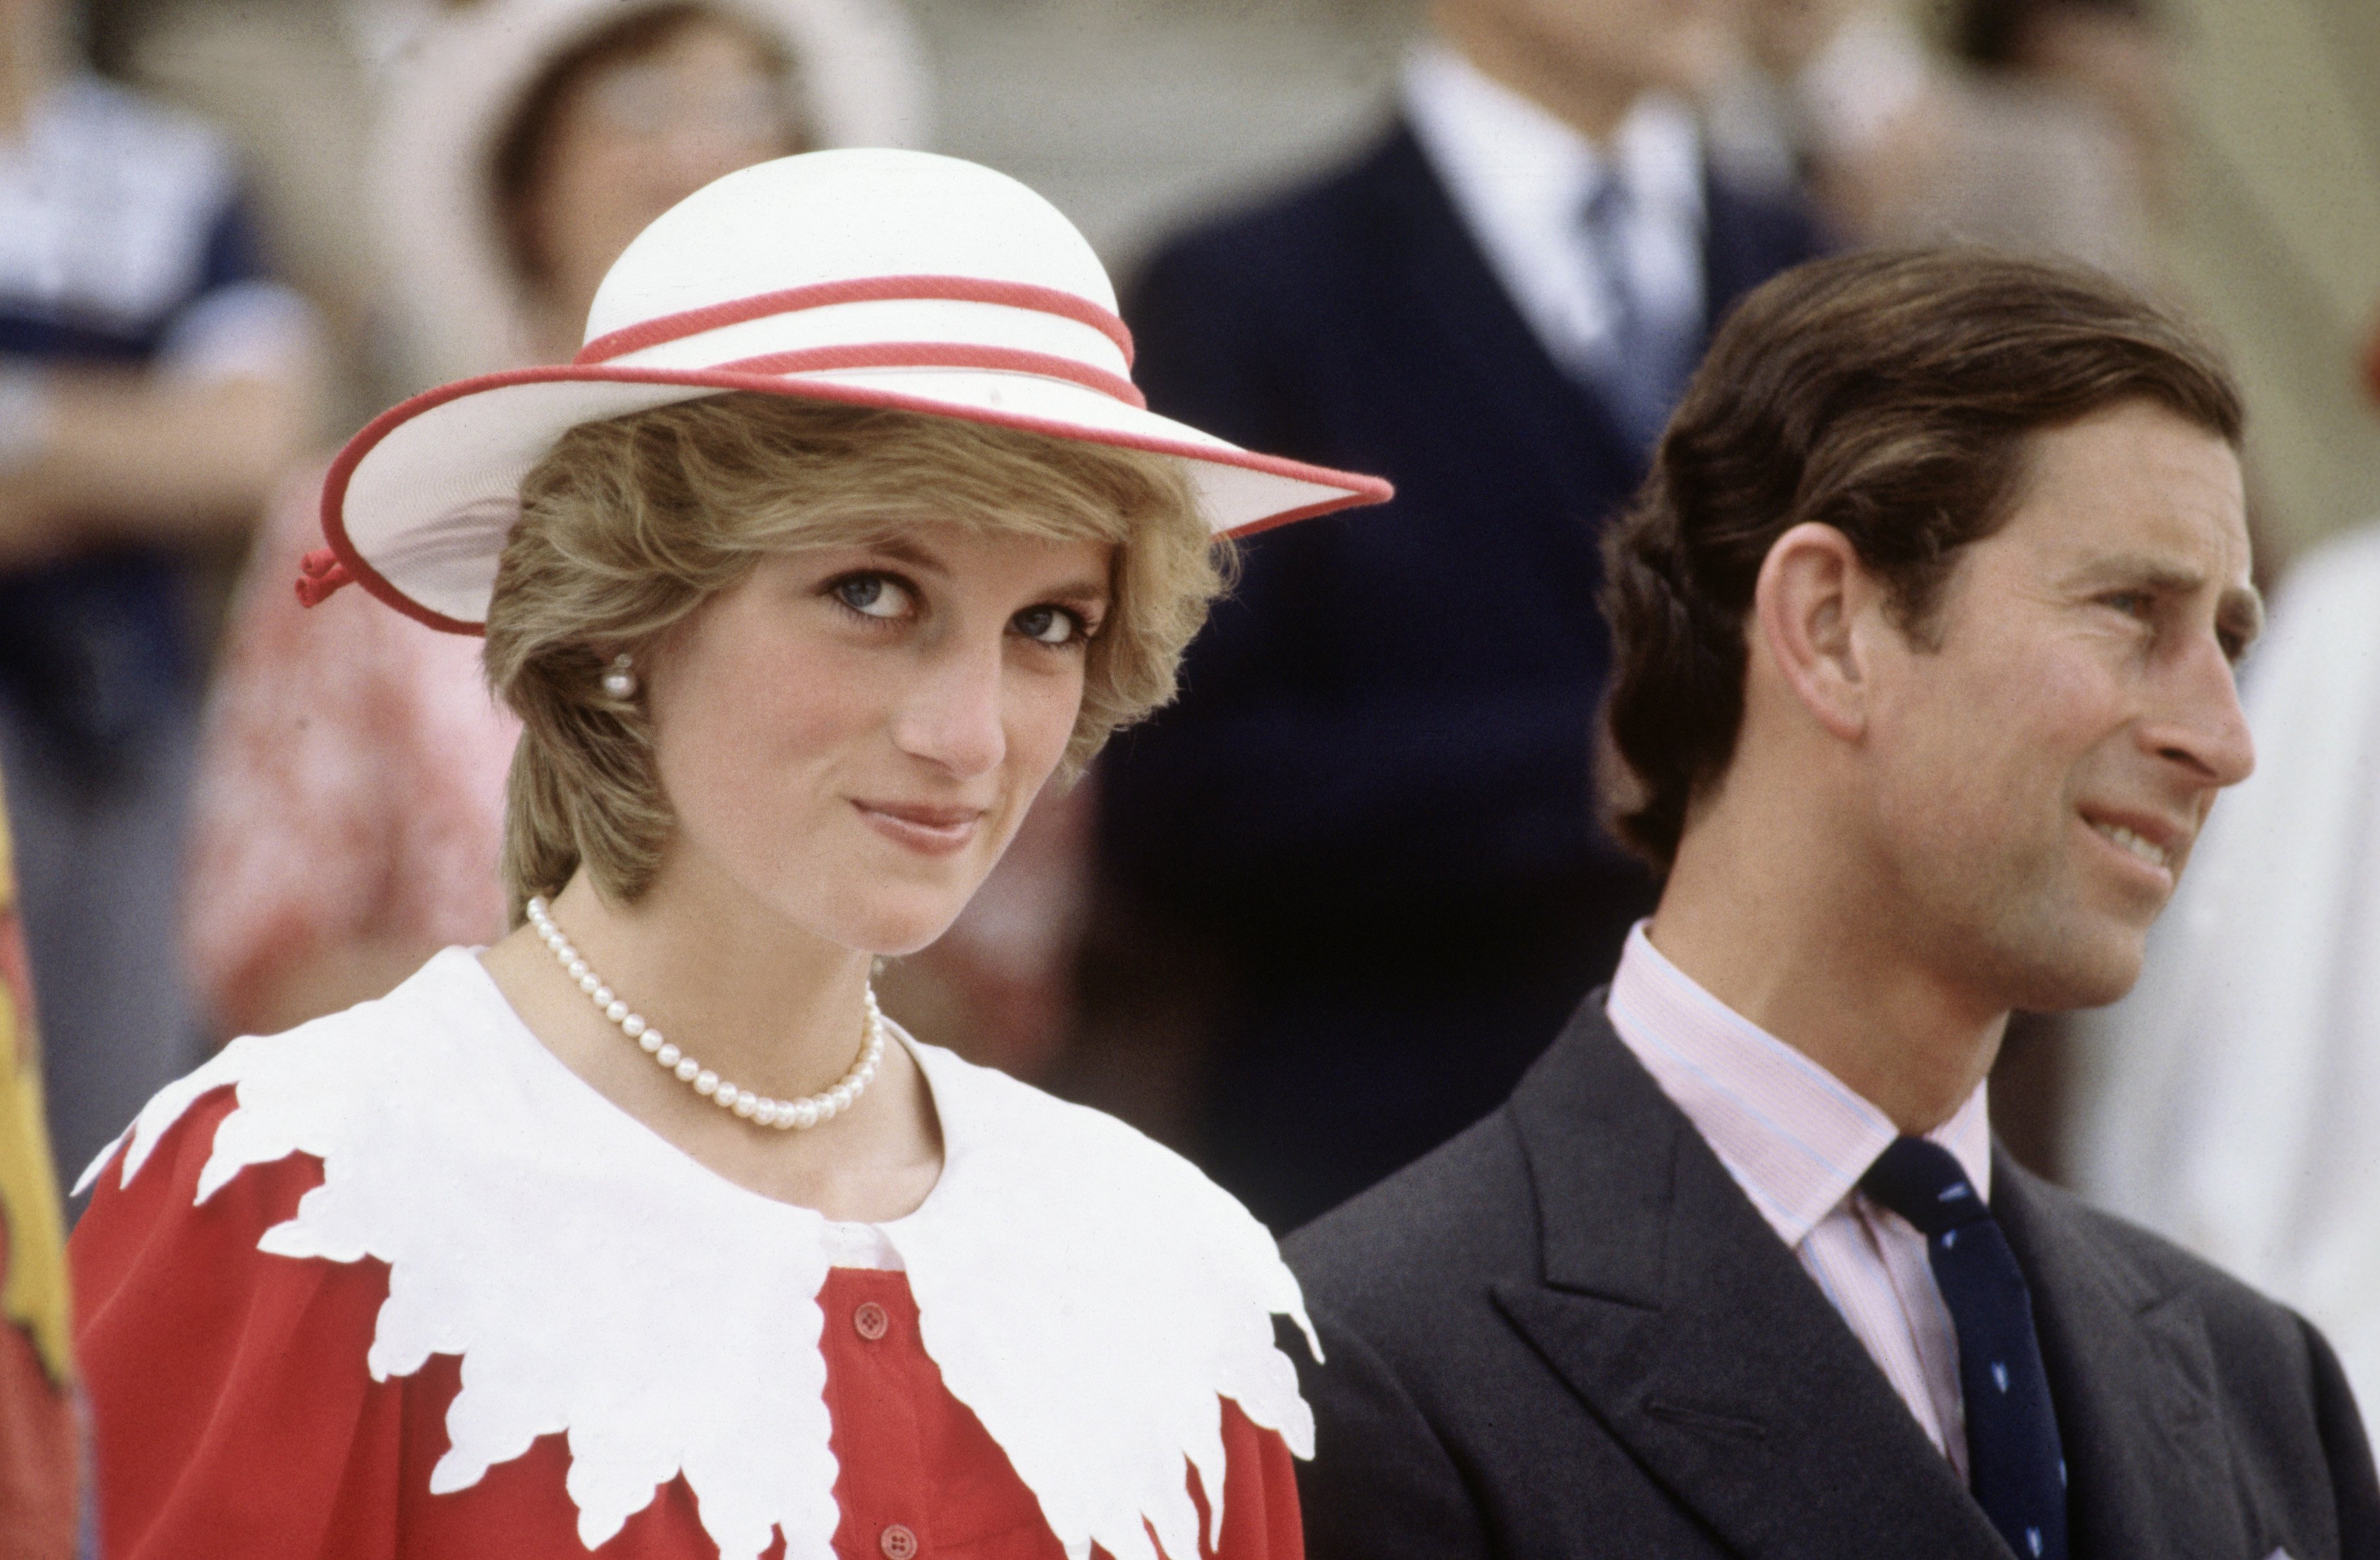 Diana Princess of Wales et le prince Charles lors de la Tournée royale du Canada le 29 juin 1983, à Edmonton, Alberta, Canada. | Source : Getty Images.